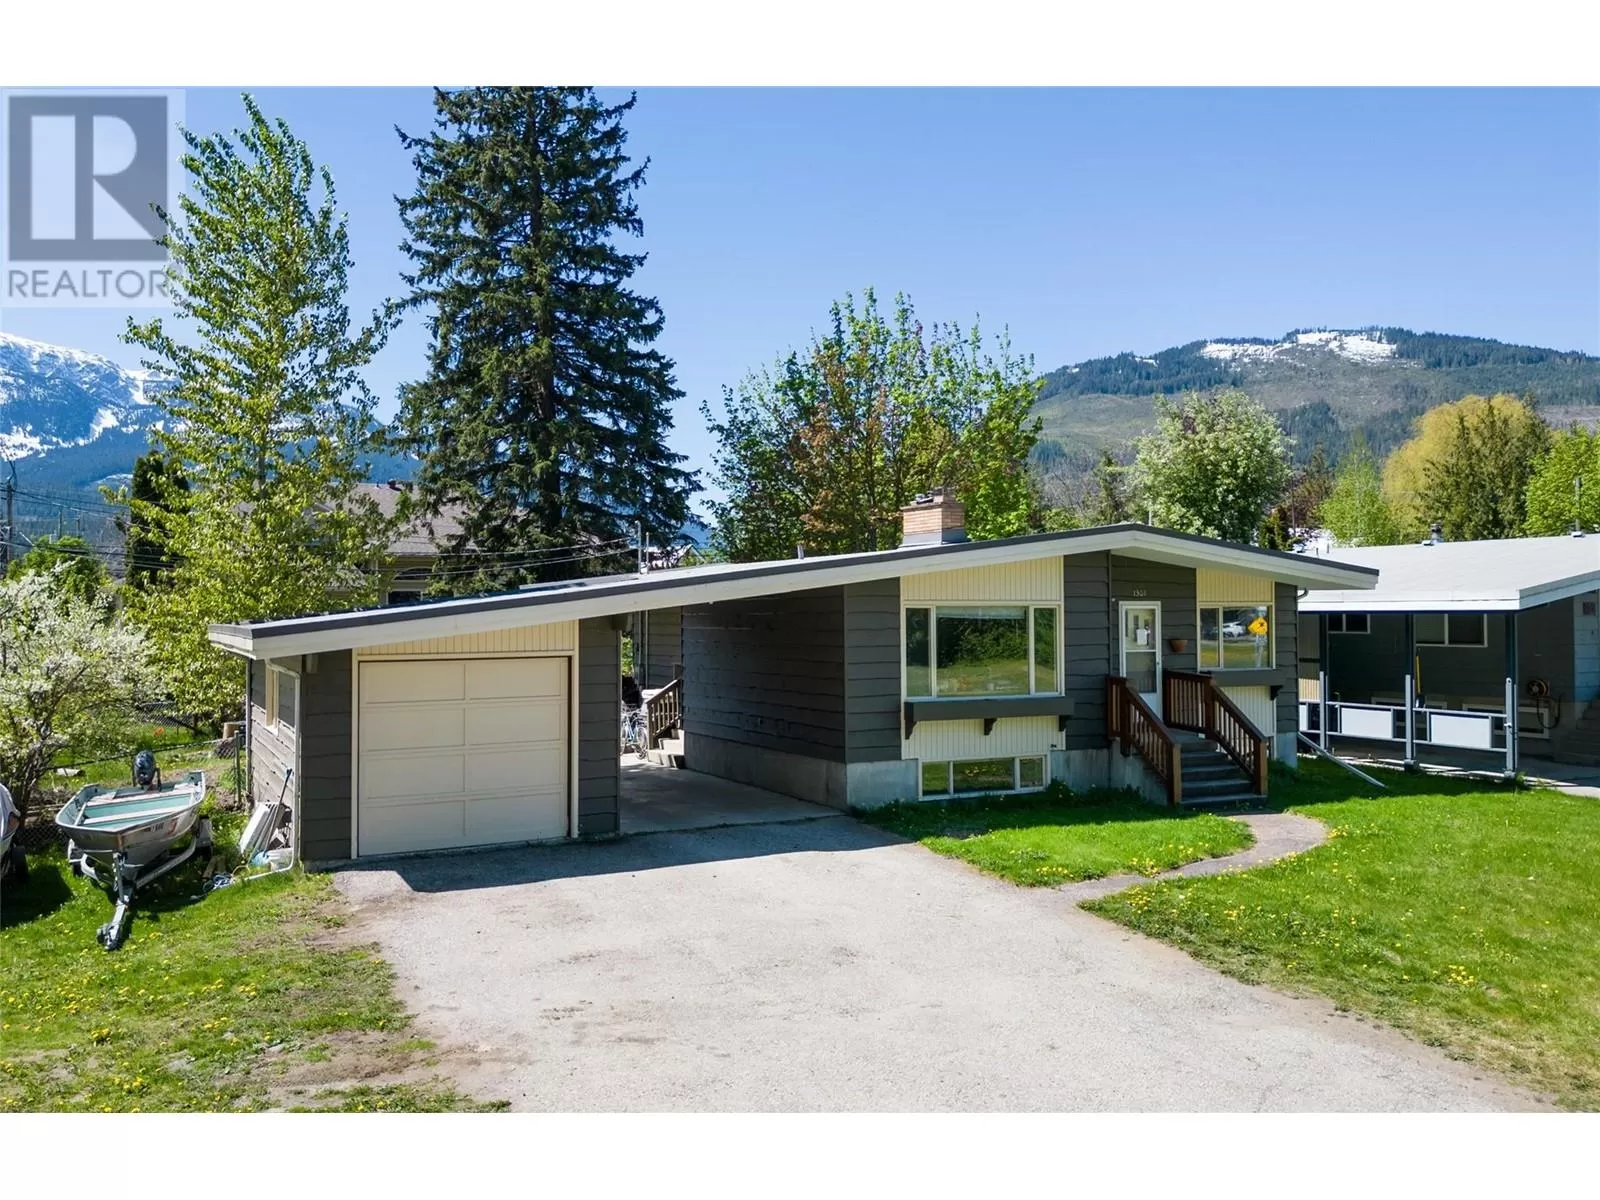 House for rent: 1301 Second Street, Revelstoke, British Columbia V0E 2S0